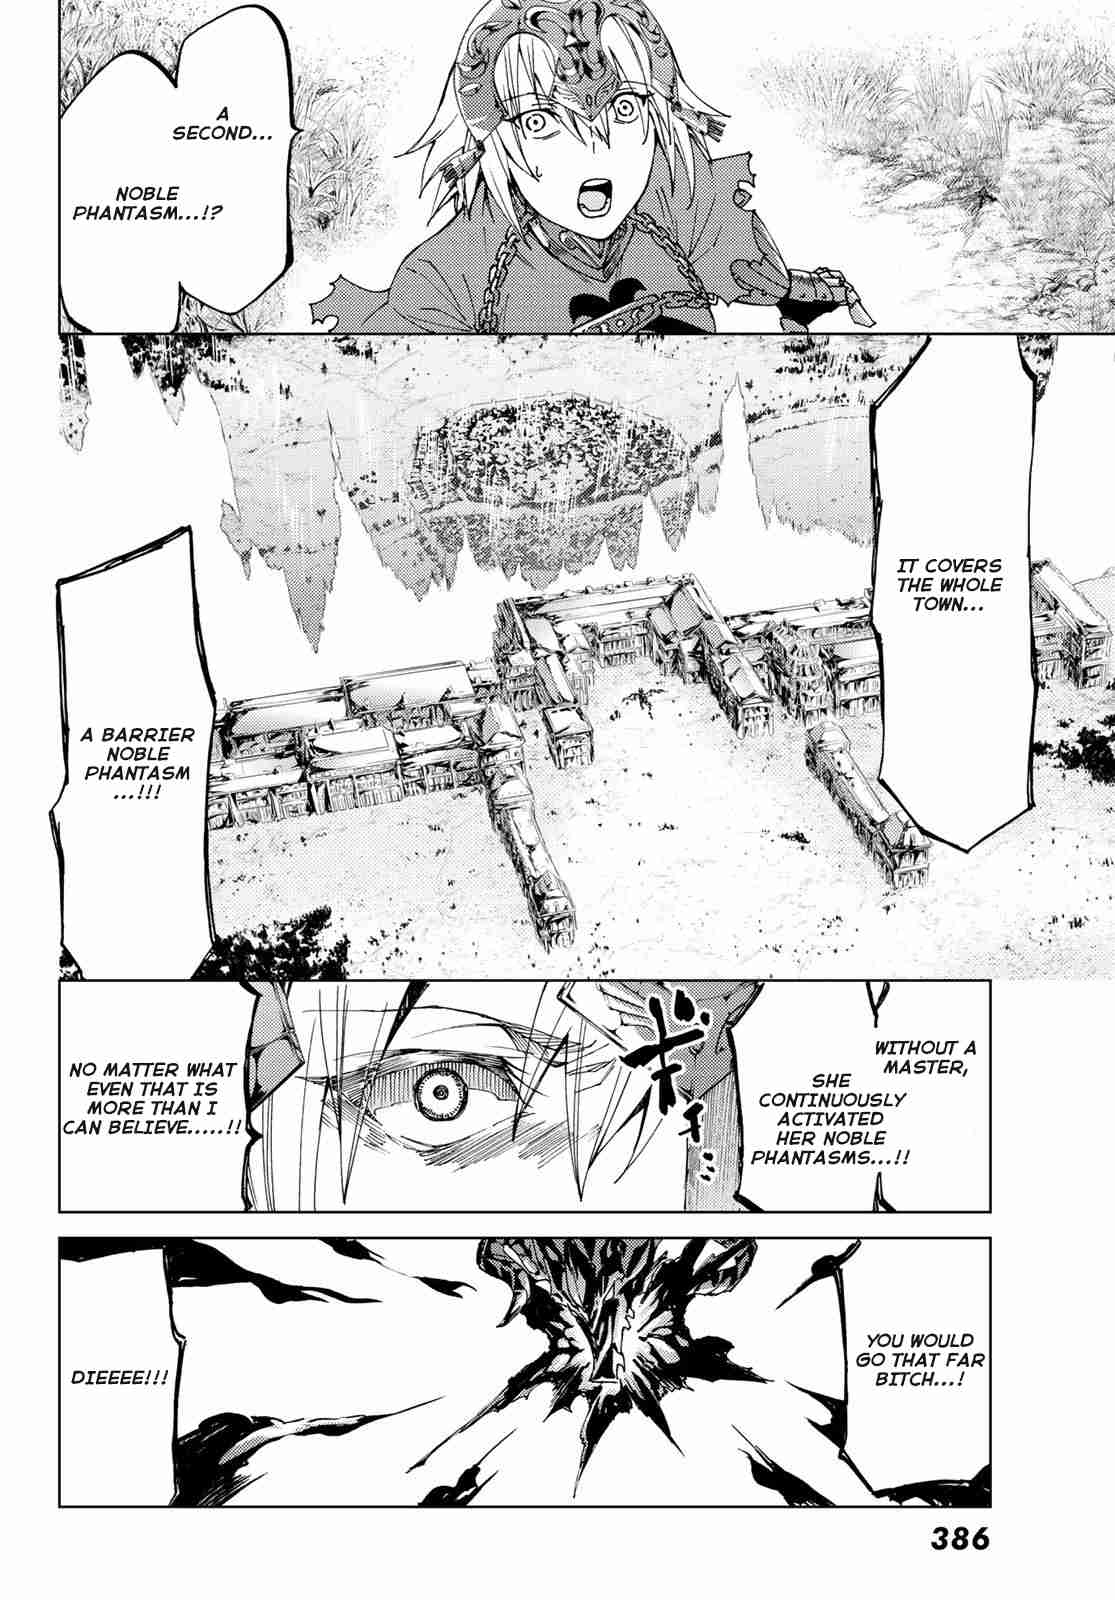 Fate/Grand Order turas réalta Vol. 3 Ch. 12